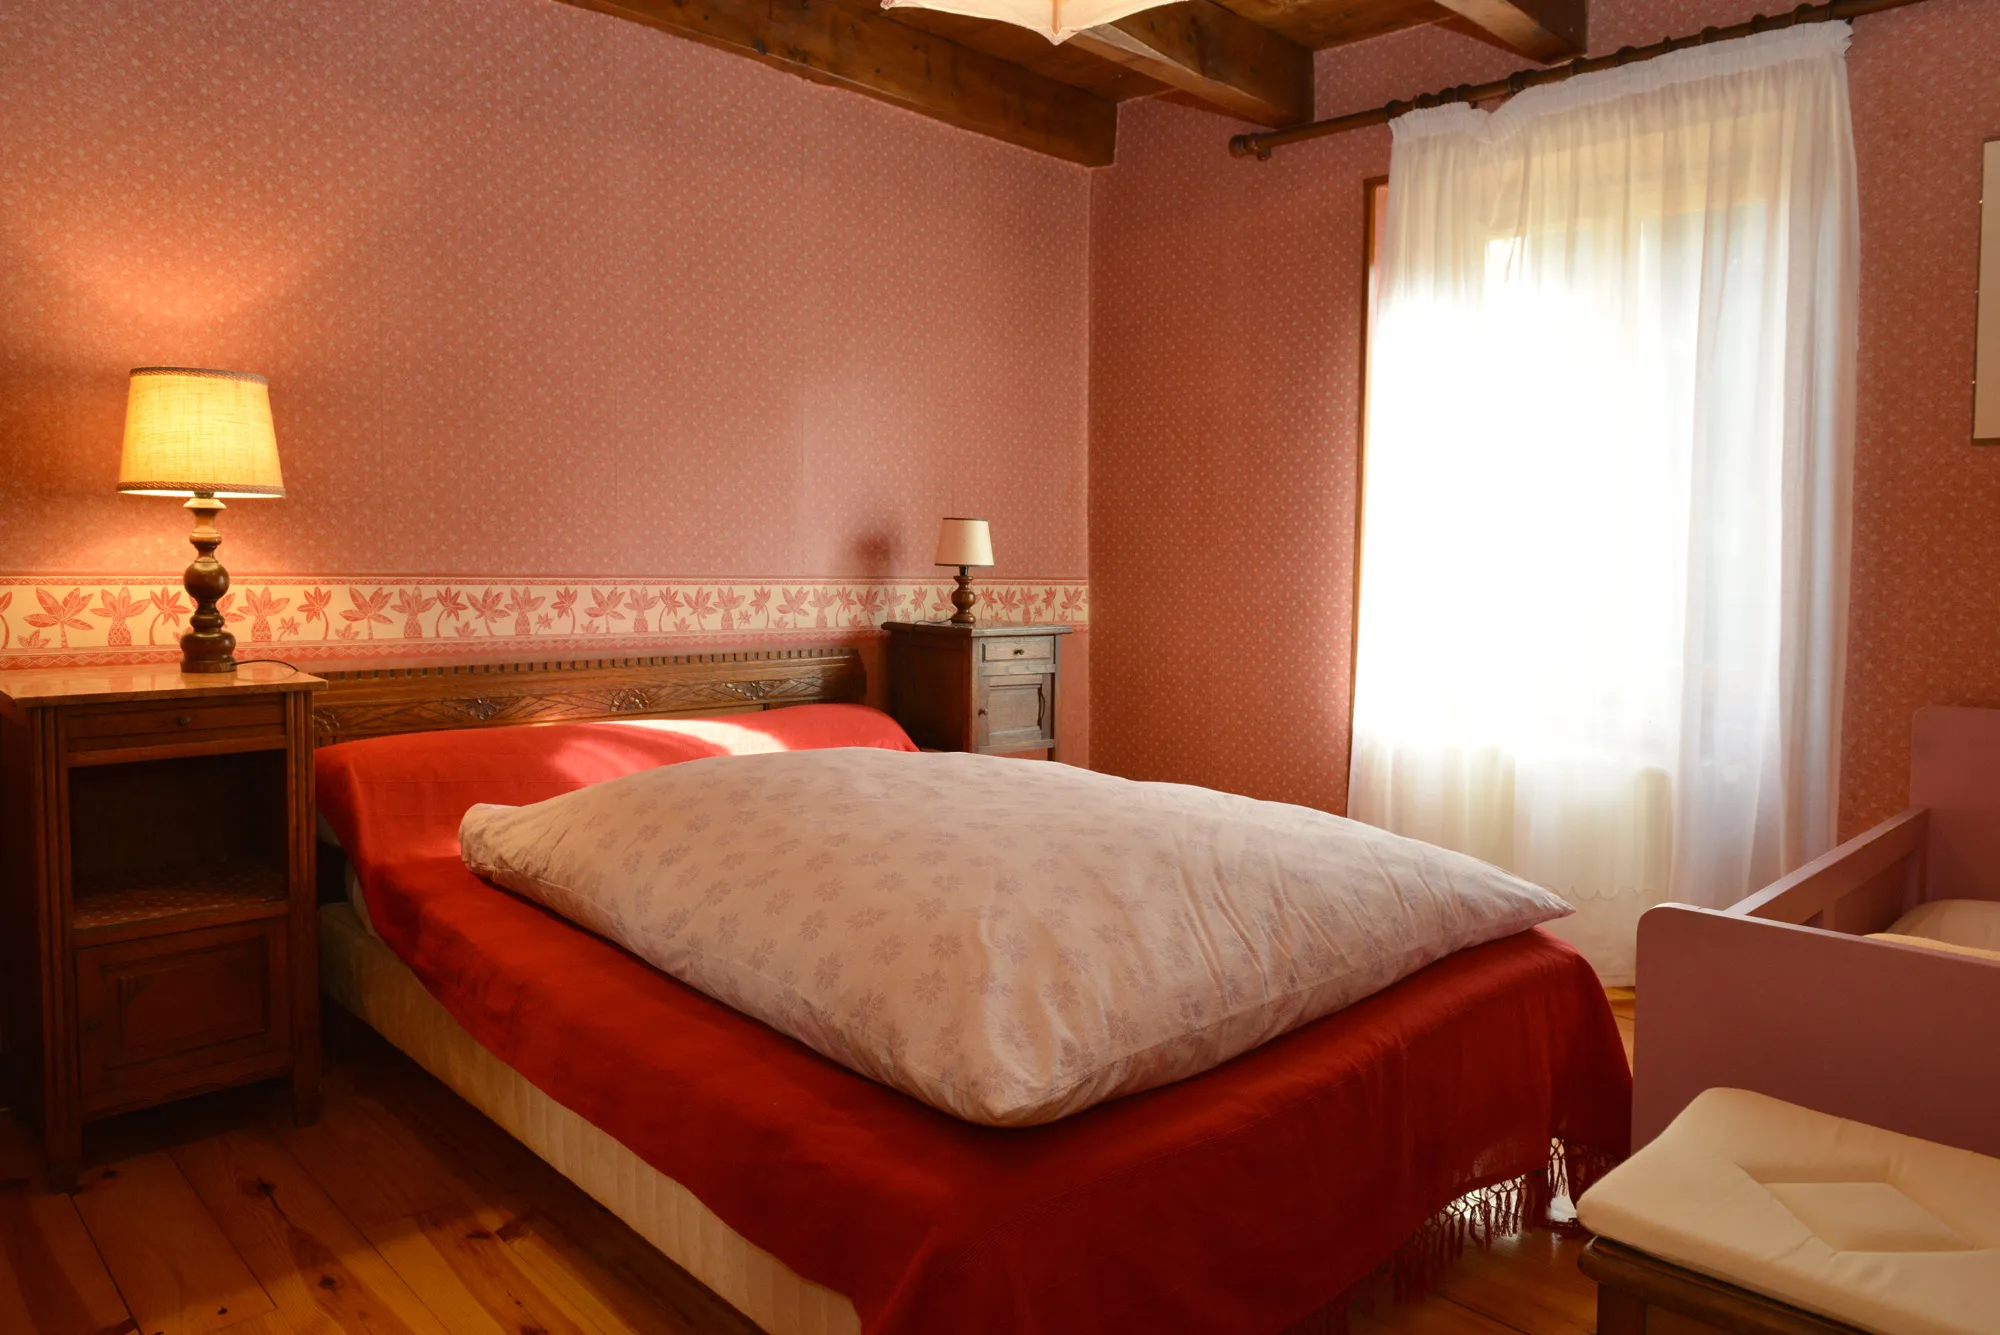 Chambre rouge pour deux personnes avec un lit double et quelques meubles